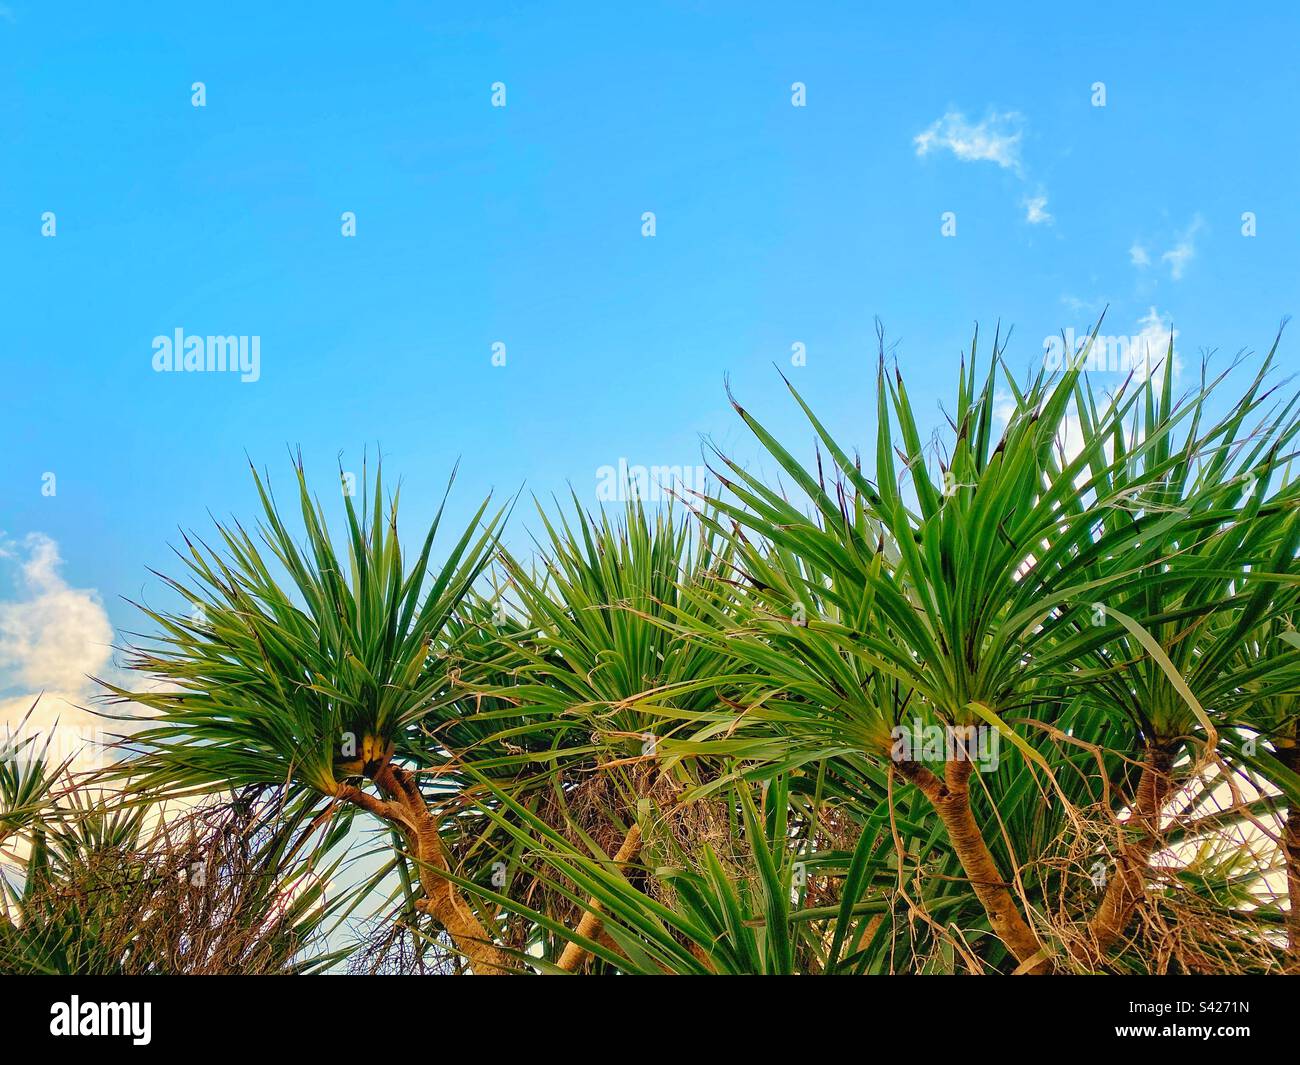 Ein Foto von Palmen vor einem blauen, sonnigen Himmel Stockfoto